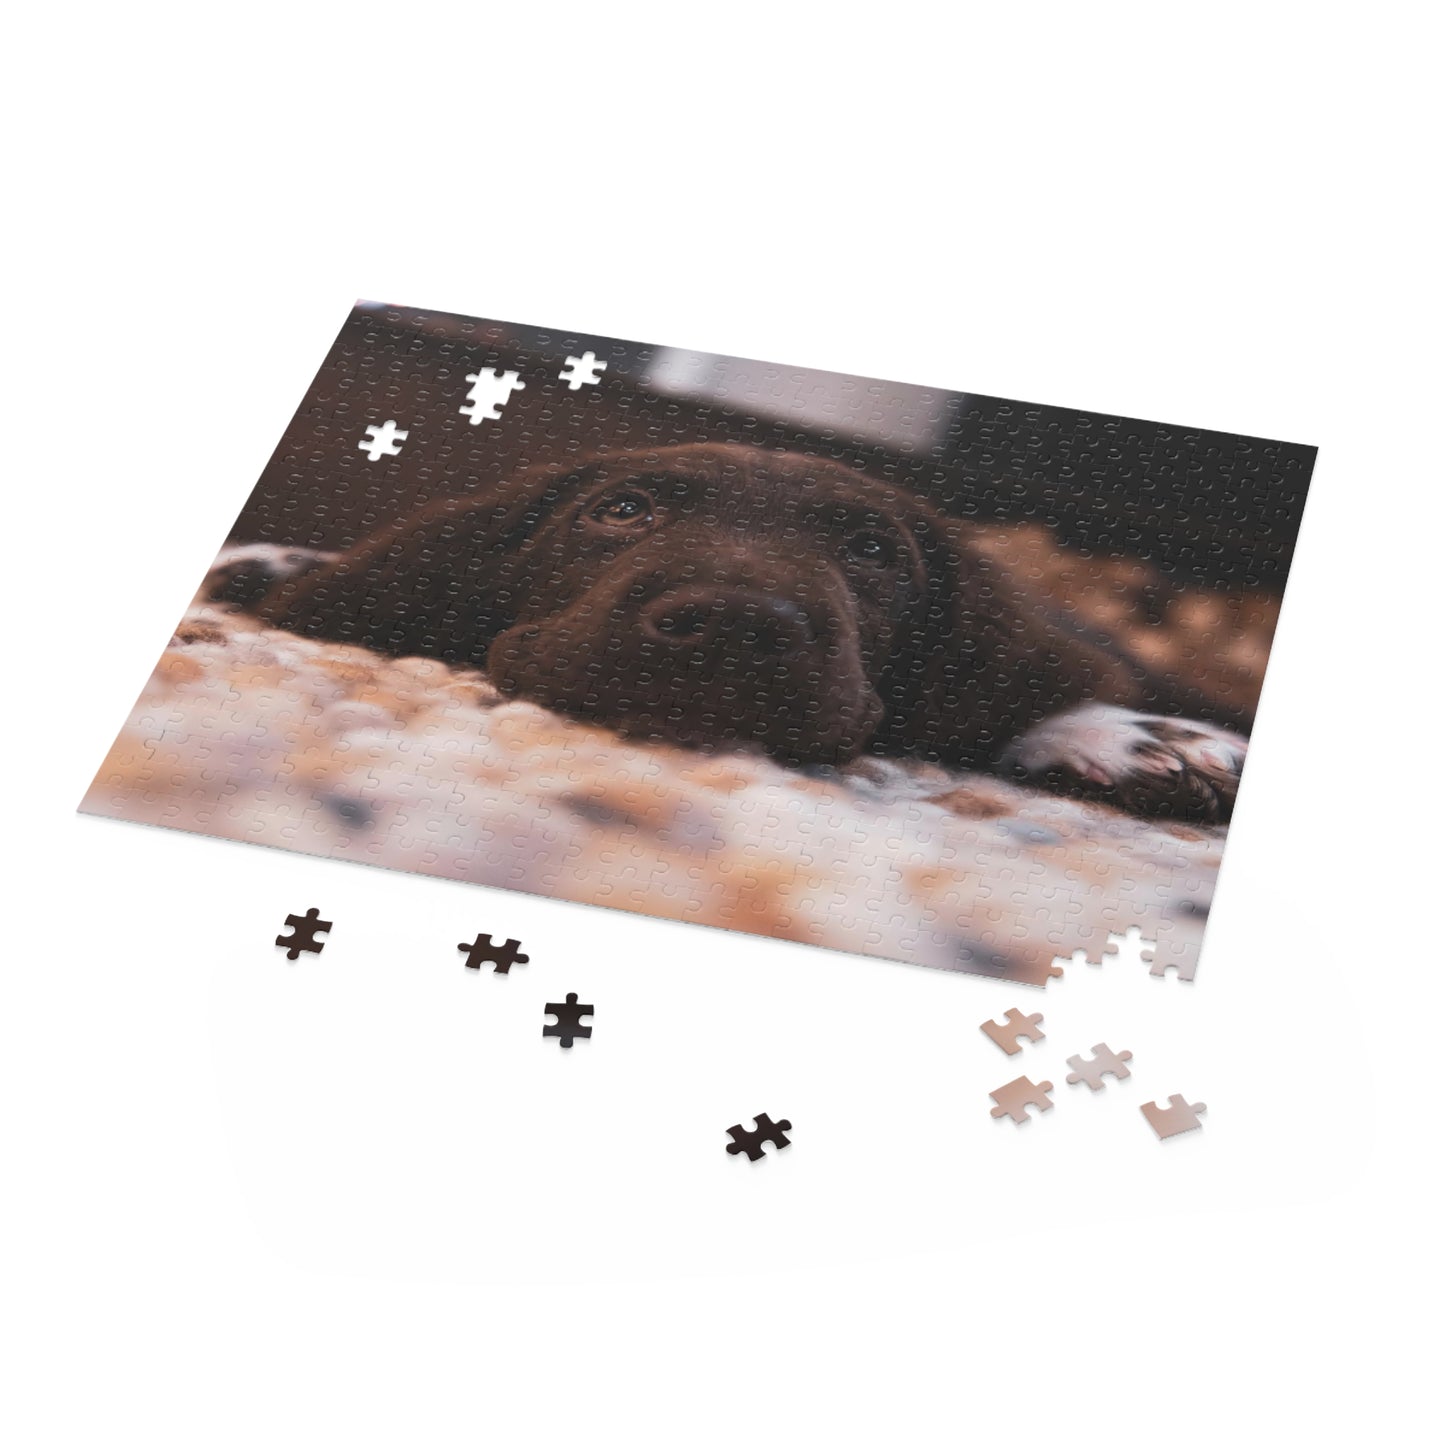 Chocolate Labrador Retriever Puzzle (120 or 500-Piece)